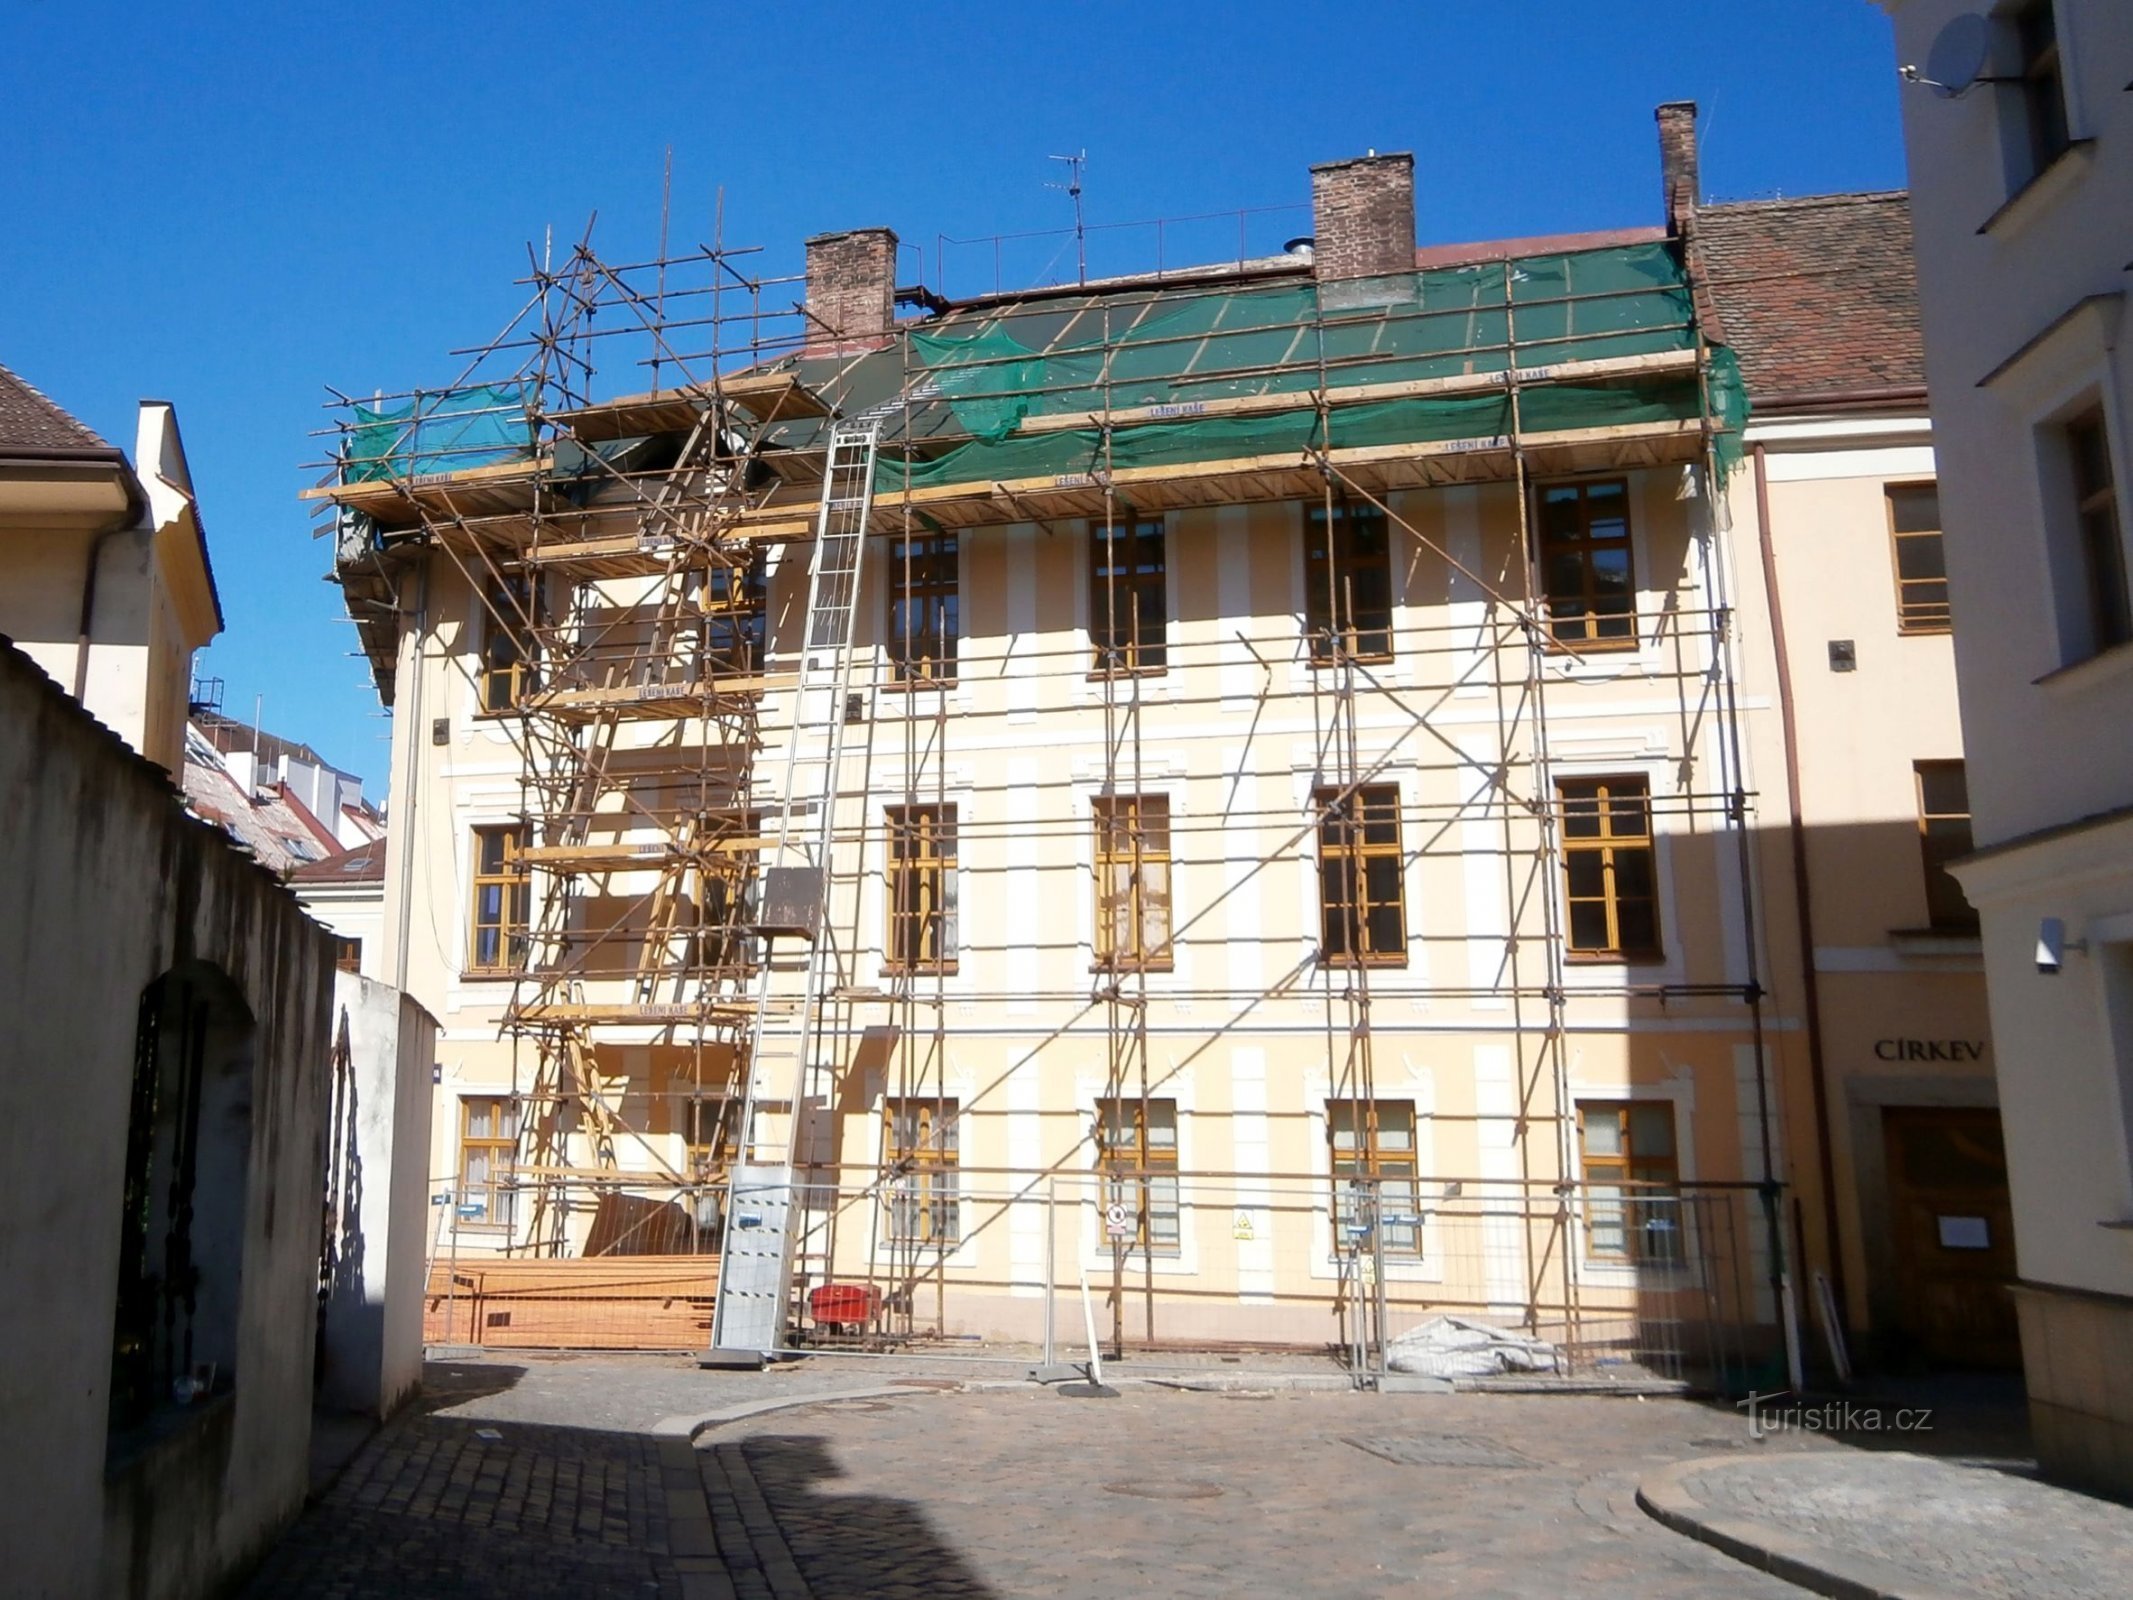 Réparation du toit au n° 89 (Hradec Králové, 18.6.2016/XNUMX/XNUMX)